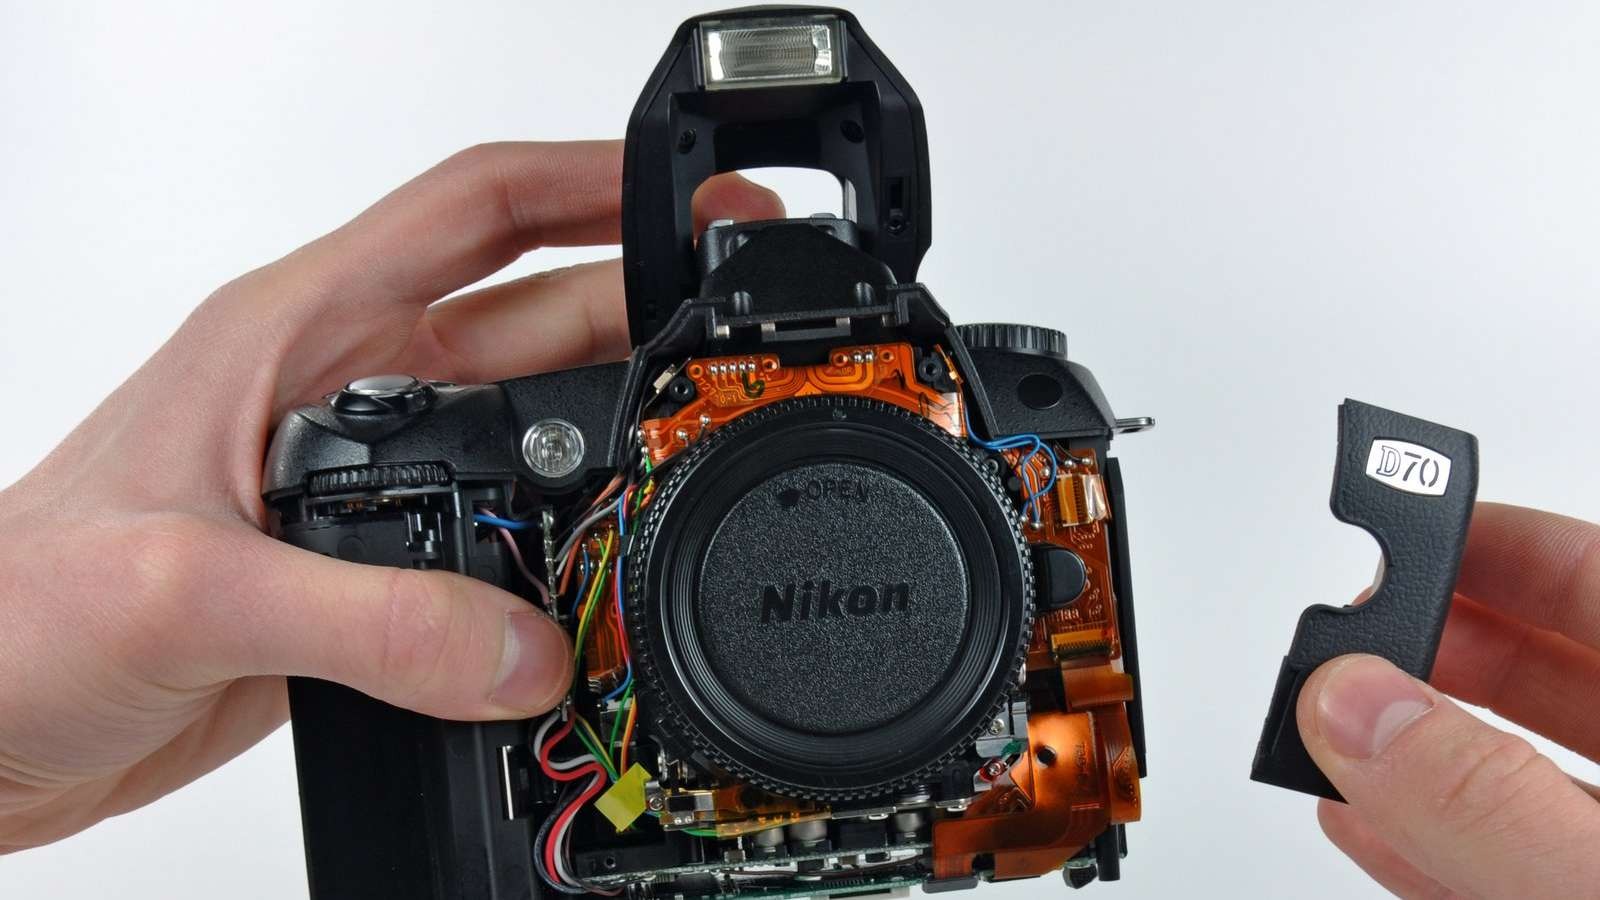 Nikon sẽ kết thúc hỗ trợ cho các cửa hàng sửa chữa được ủy quyền vào tháng 3 /2020